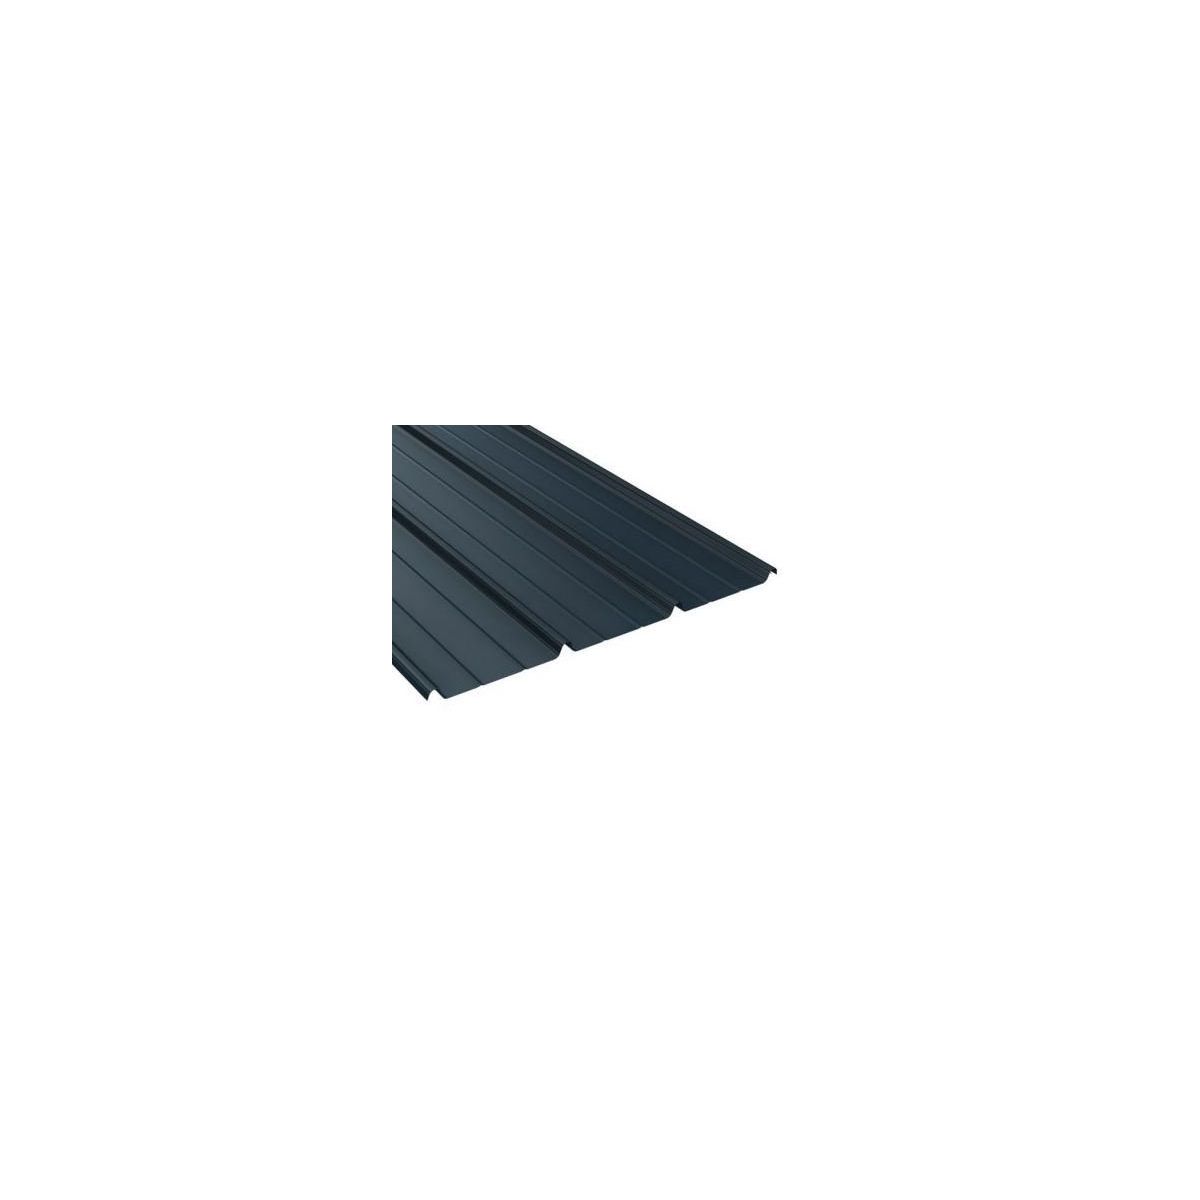 Tôle de toiture acier galvanisé - Anti condensation - Ral 7016 (gris anthracite) - Longueur 4m